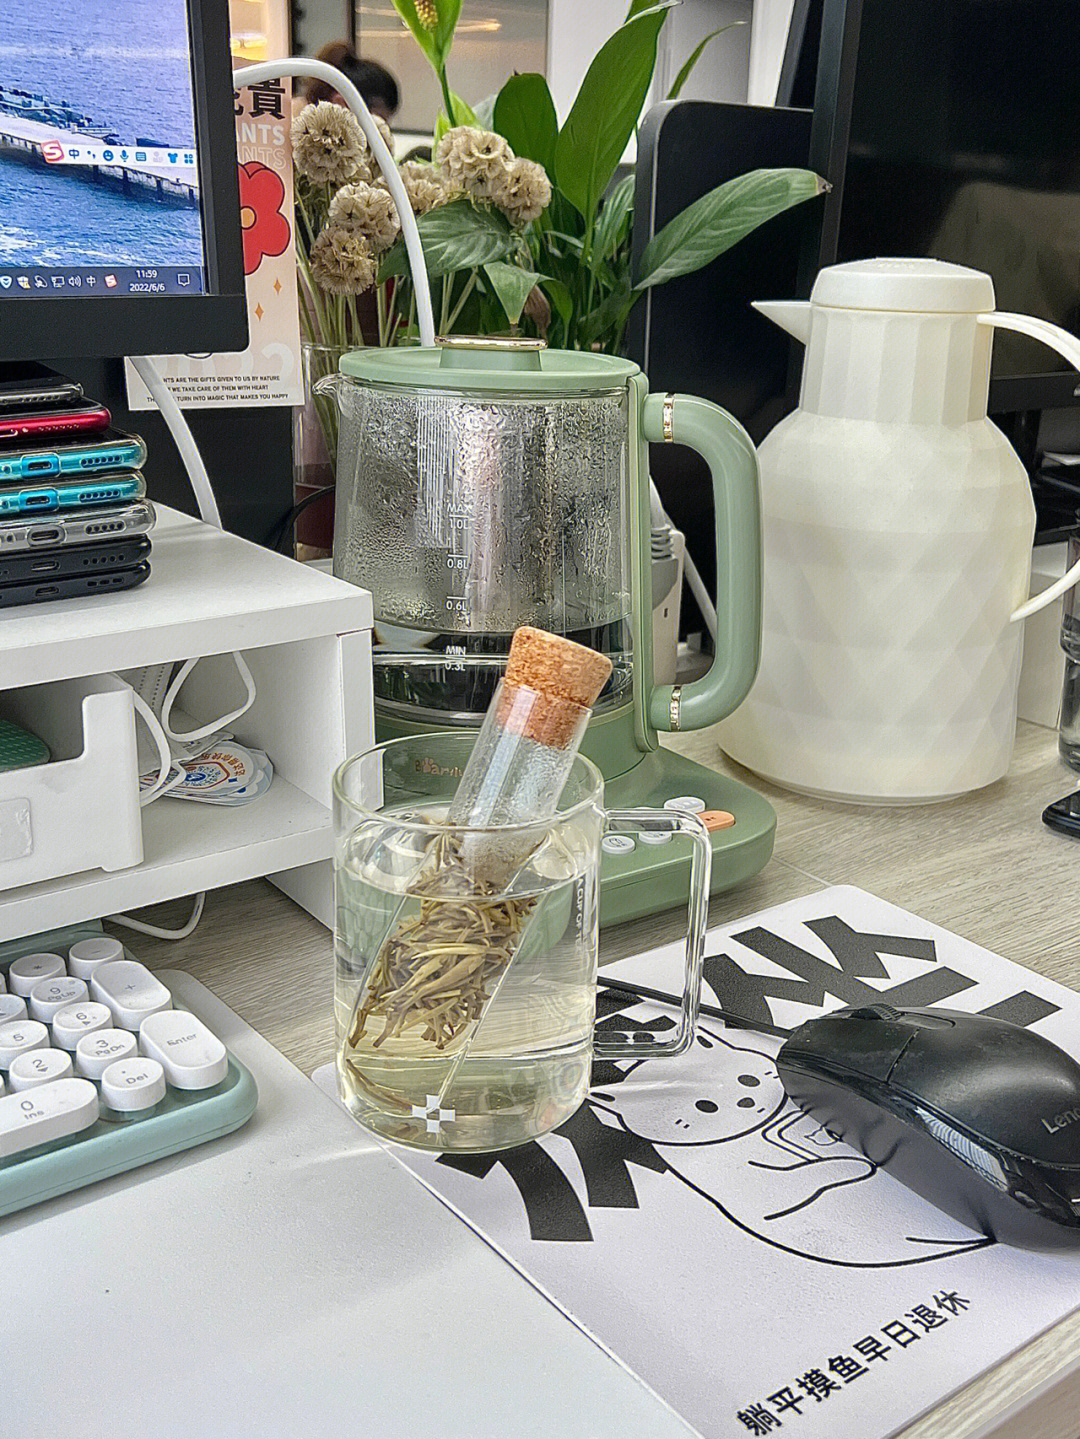 奶茶放在办公桌的照片图片